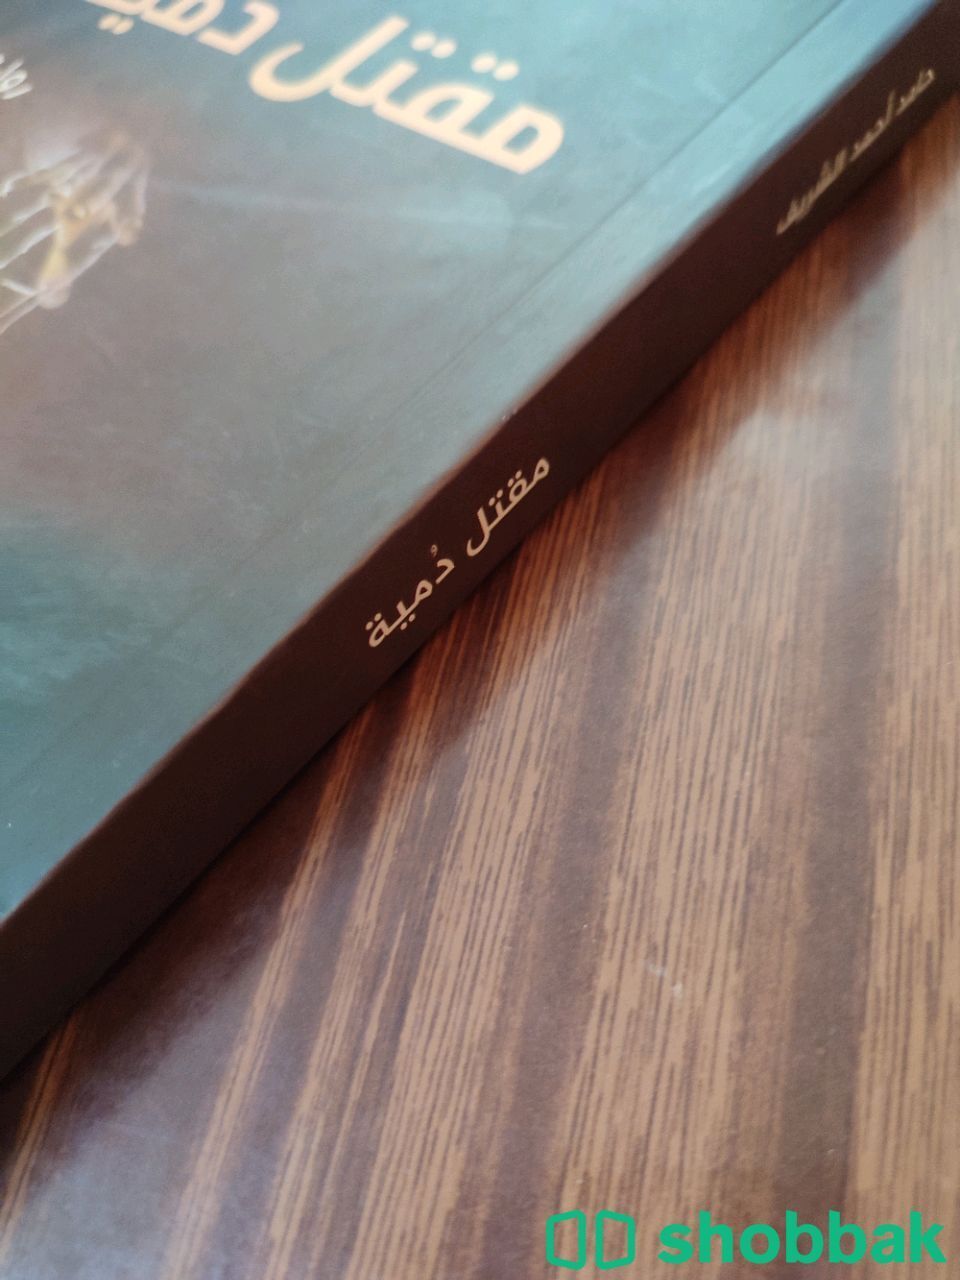 رواية مقتل دمية من مكتبة جرير شباك السعودية